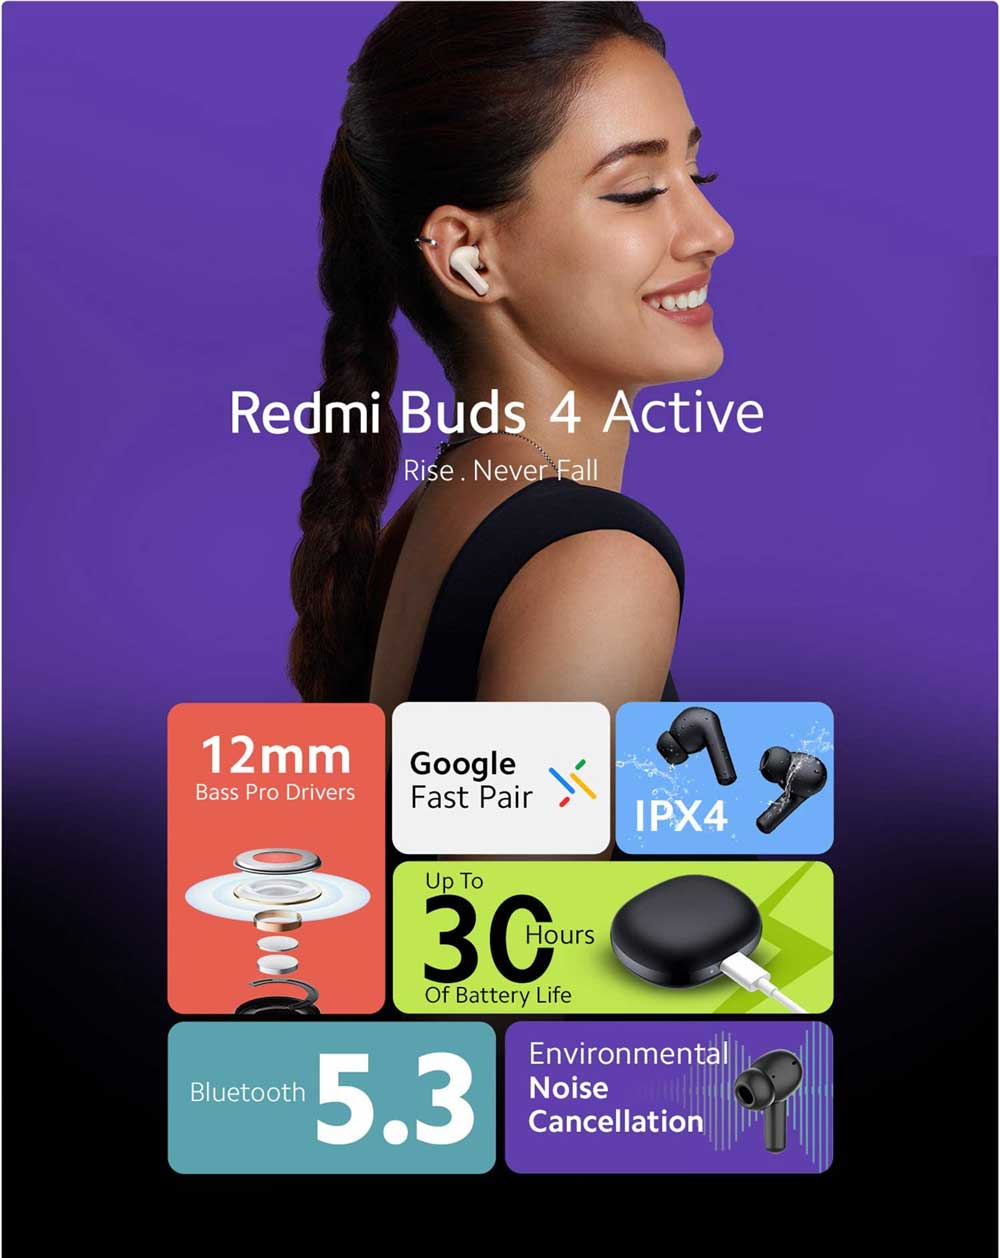 Redmi Buds 4 Active True Wirelesss Earbuds 1